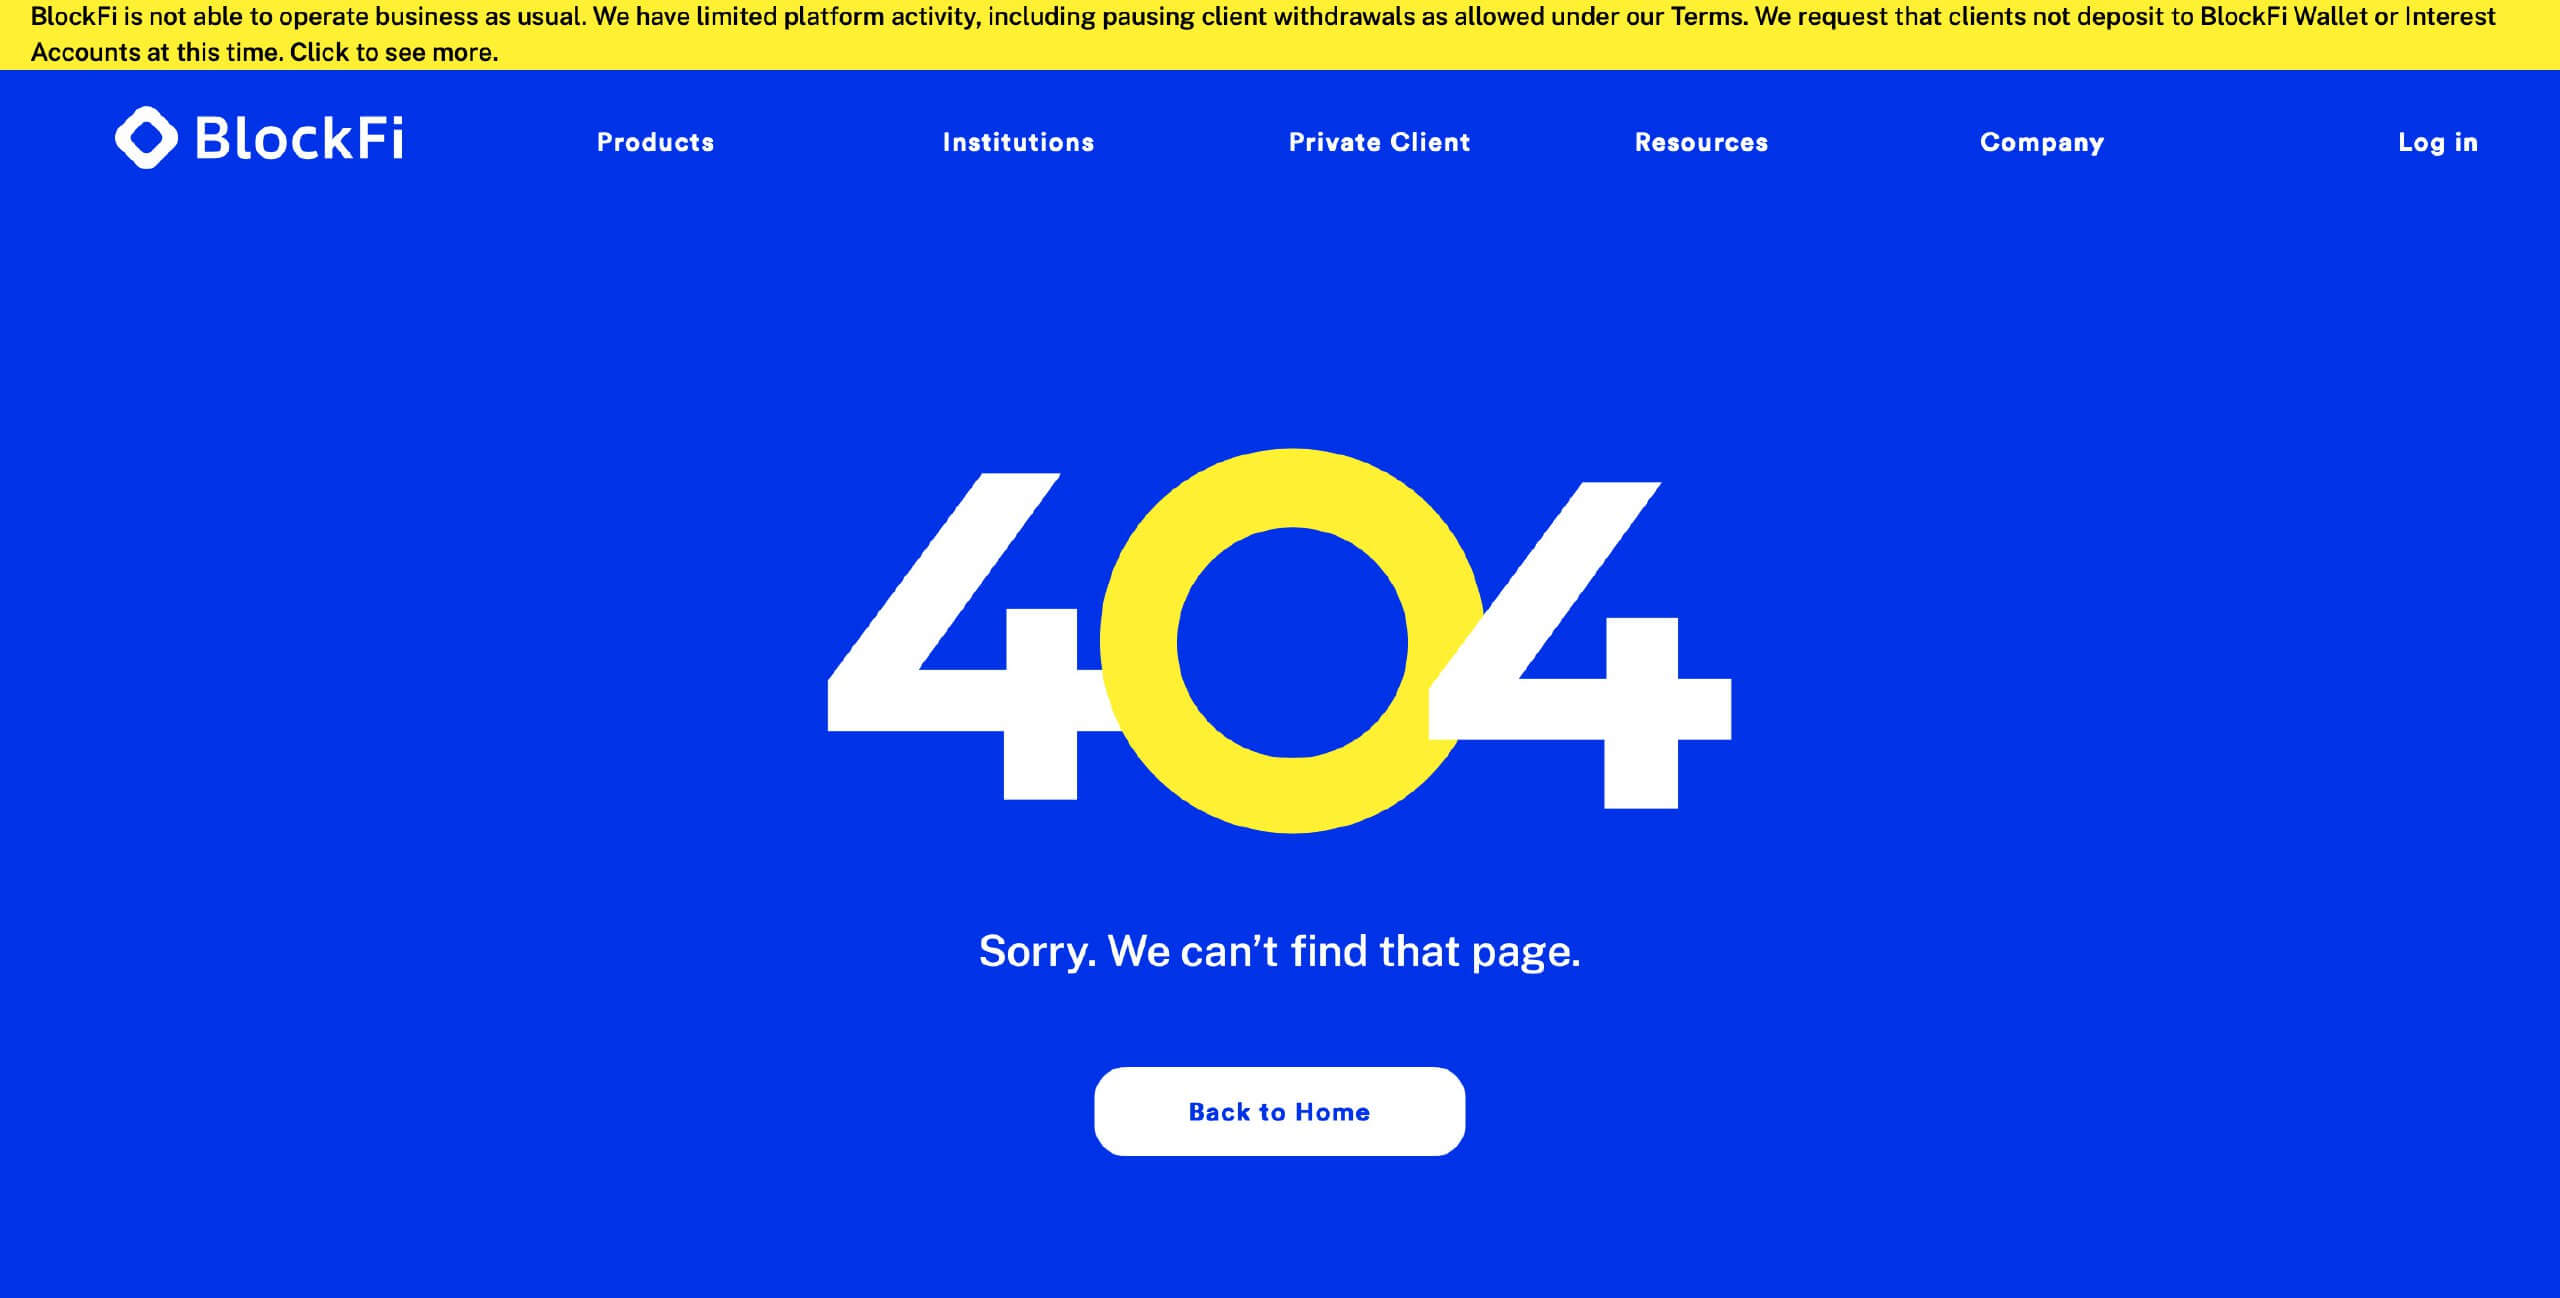 Лендинг-платформа BlockFi объявила о банкротстве. Как на это отреагировали в криптосообществе? Удалённая страница сотрудников компании BlockFi. Фото.